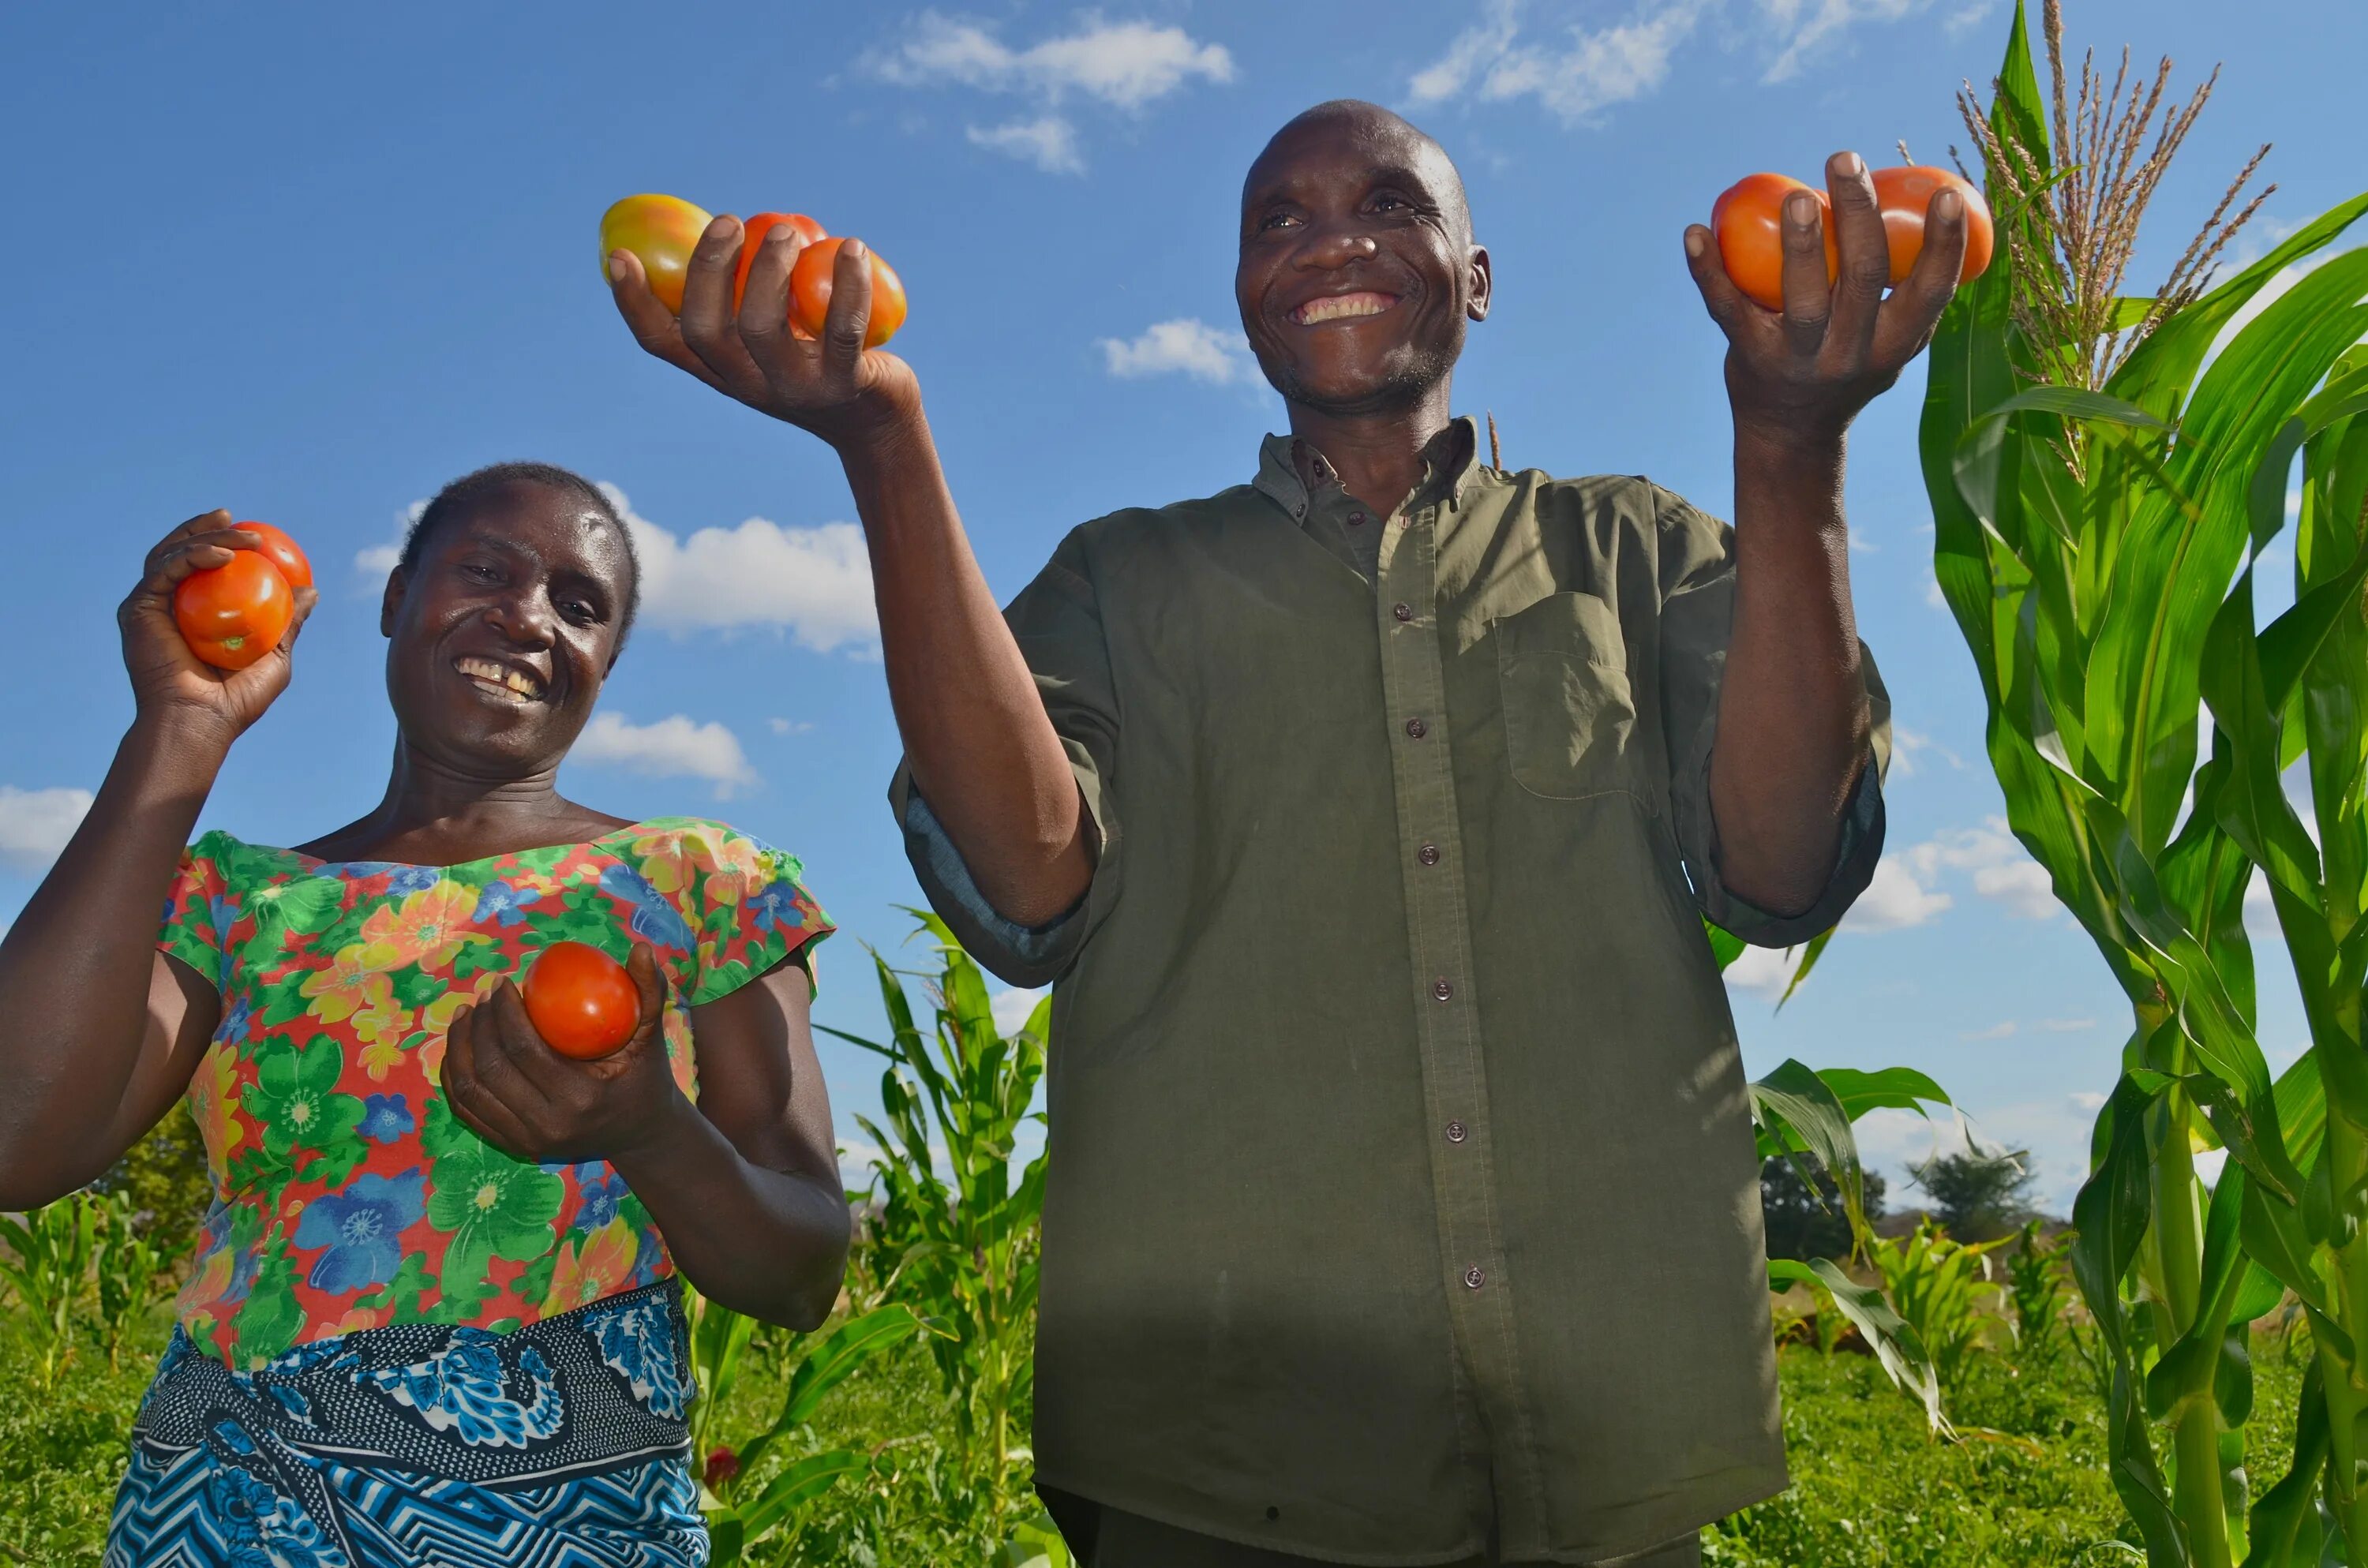 Africa grows. Африканские фрукты. Сельское хозяйство Ямайки. Африканский фермер. Танзания сельское хозяйство.